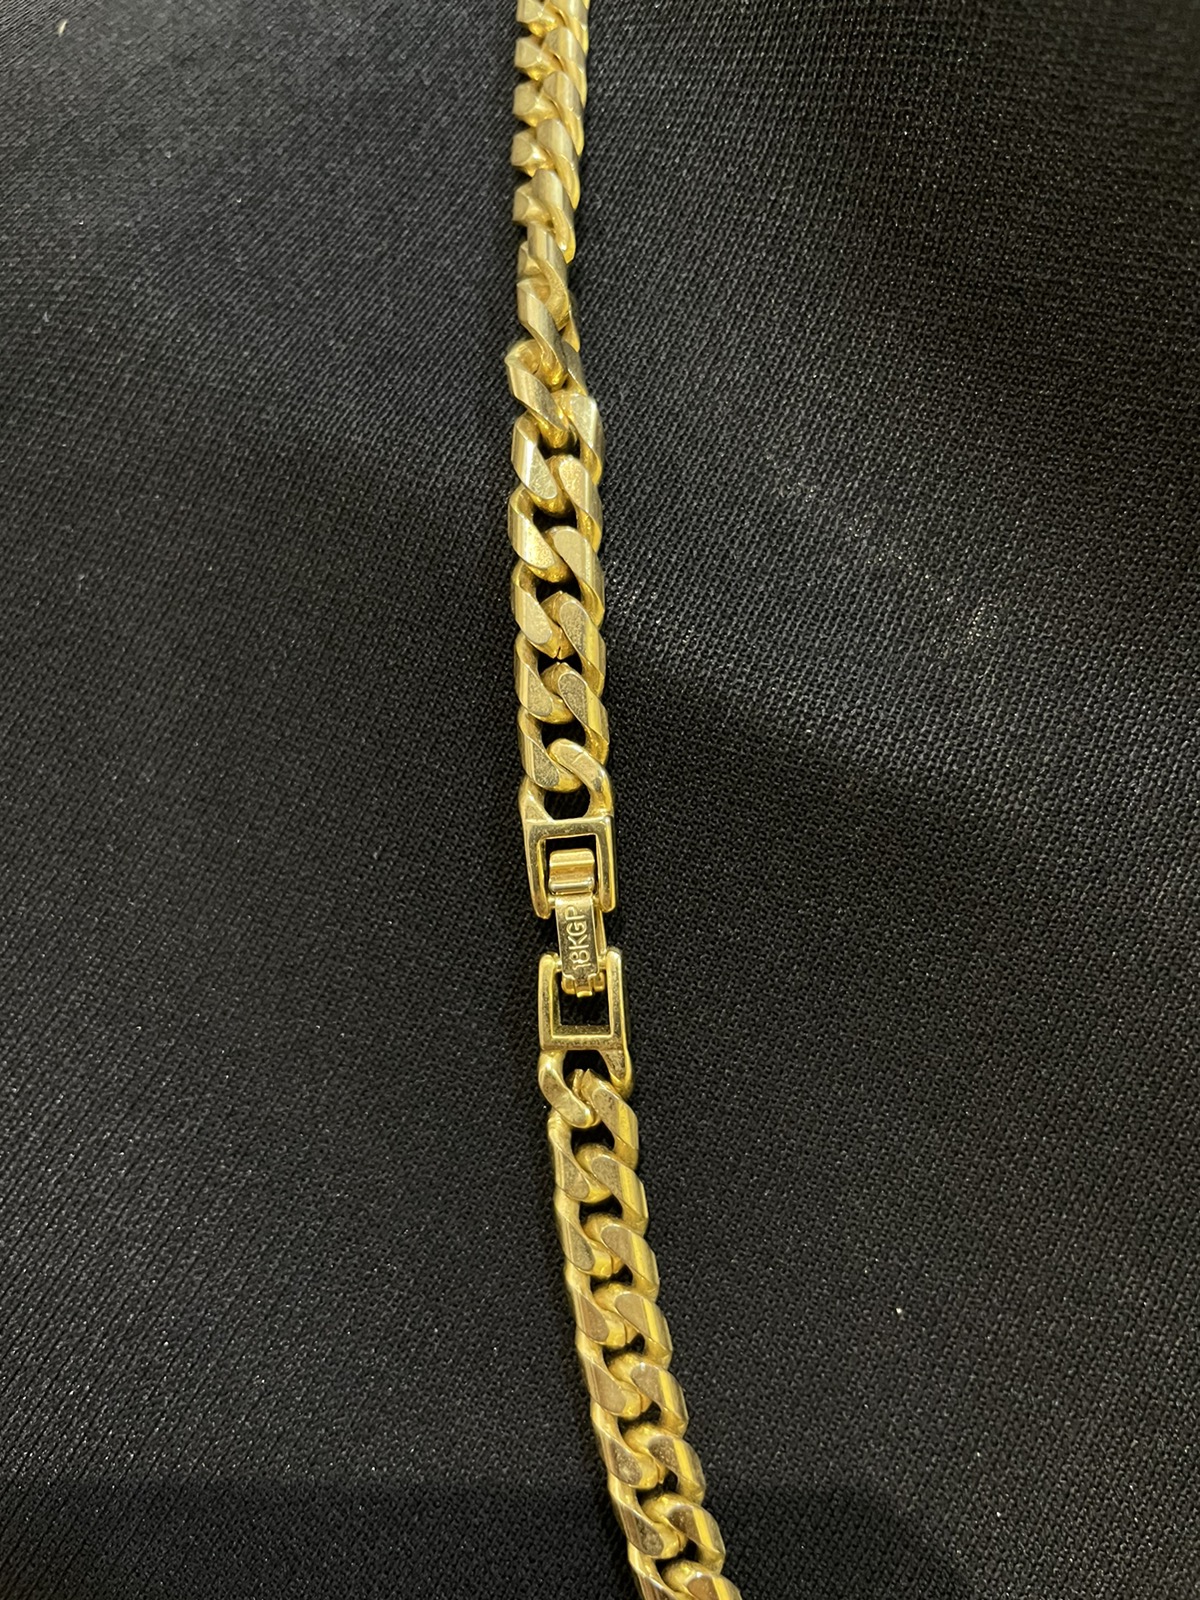 Louis Vuitton padlock / key / chain gold - 9